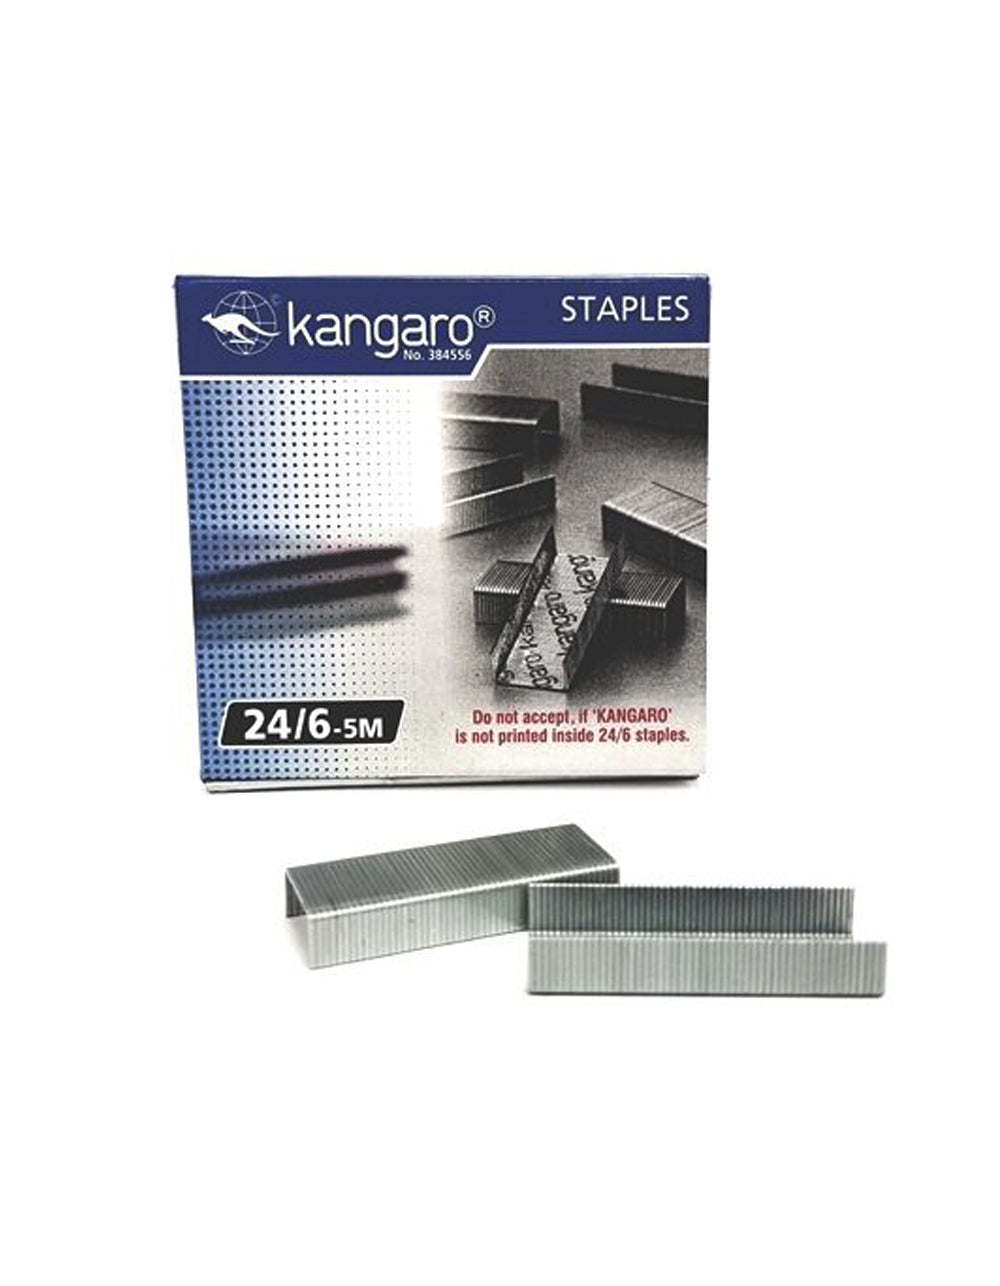 Kangaro Staples PIN 24/6 5M